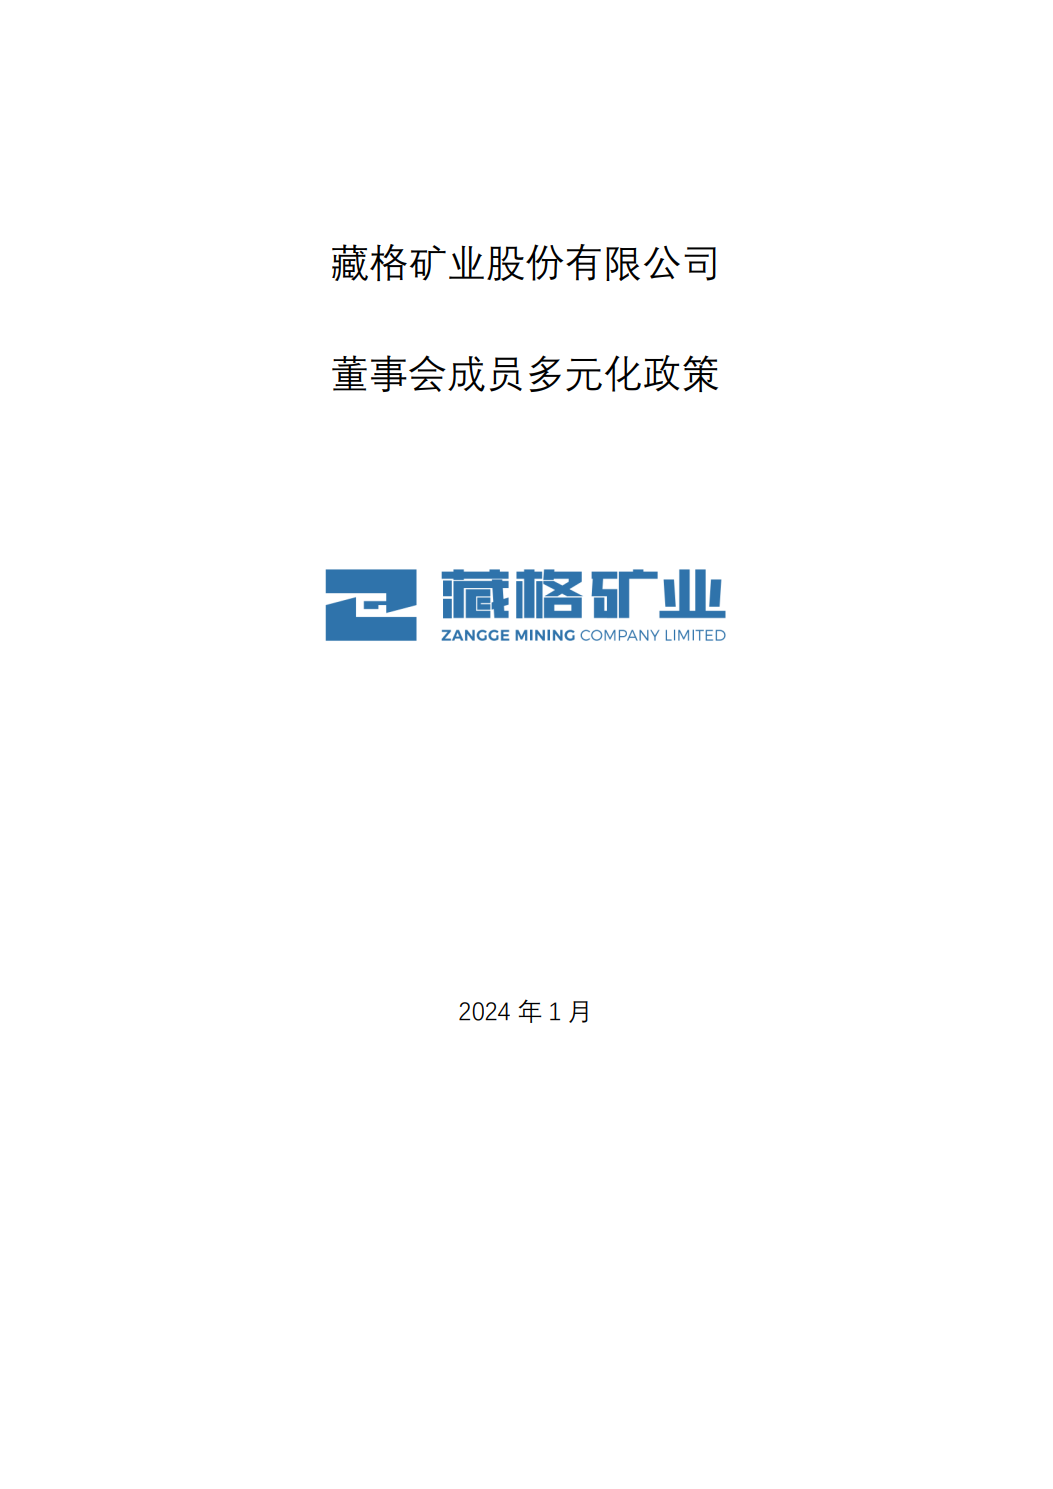 32450新蒲京股份有限公司董事会成员多元化政策